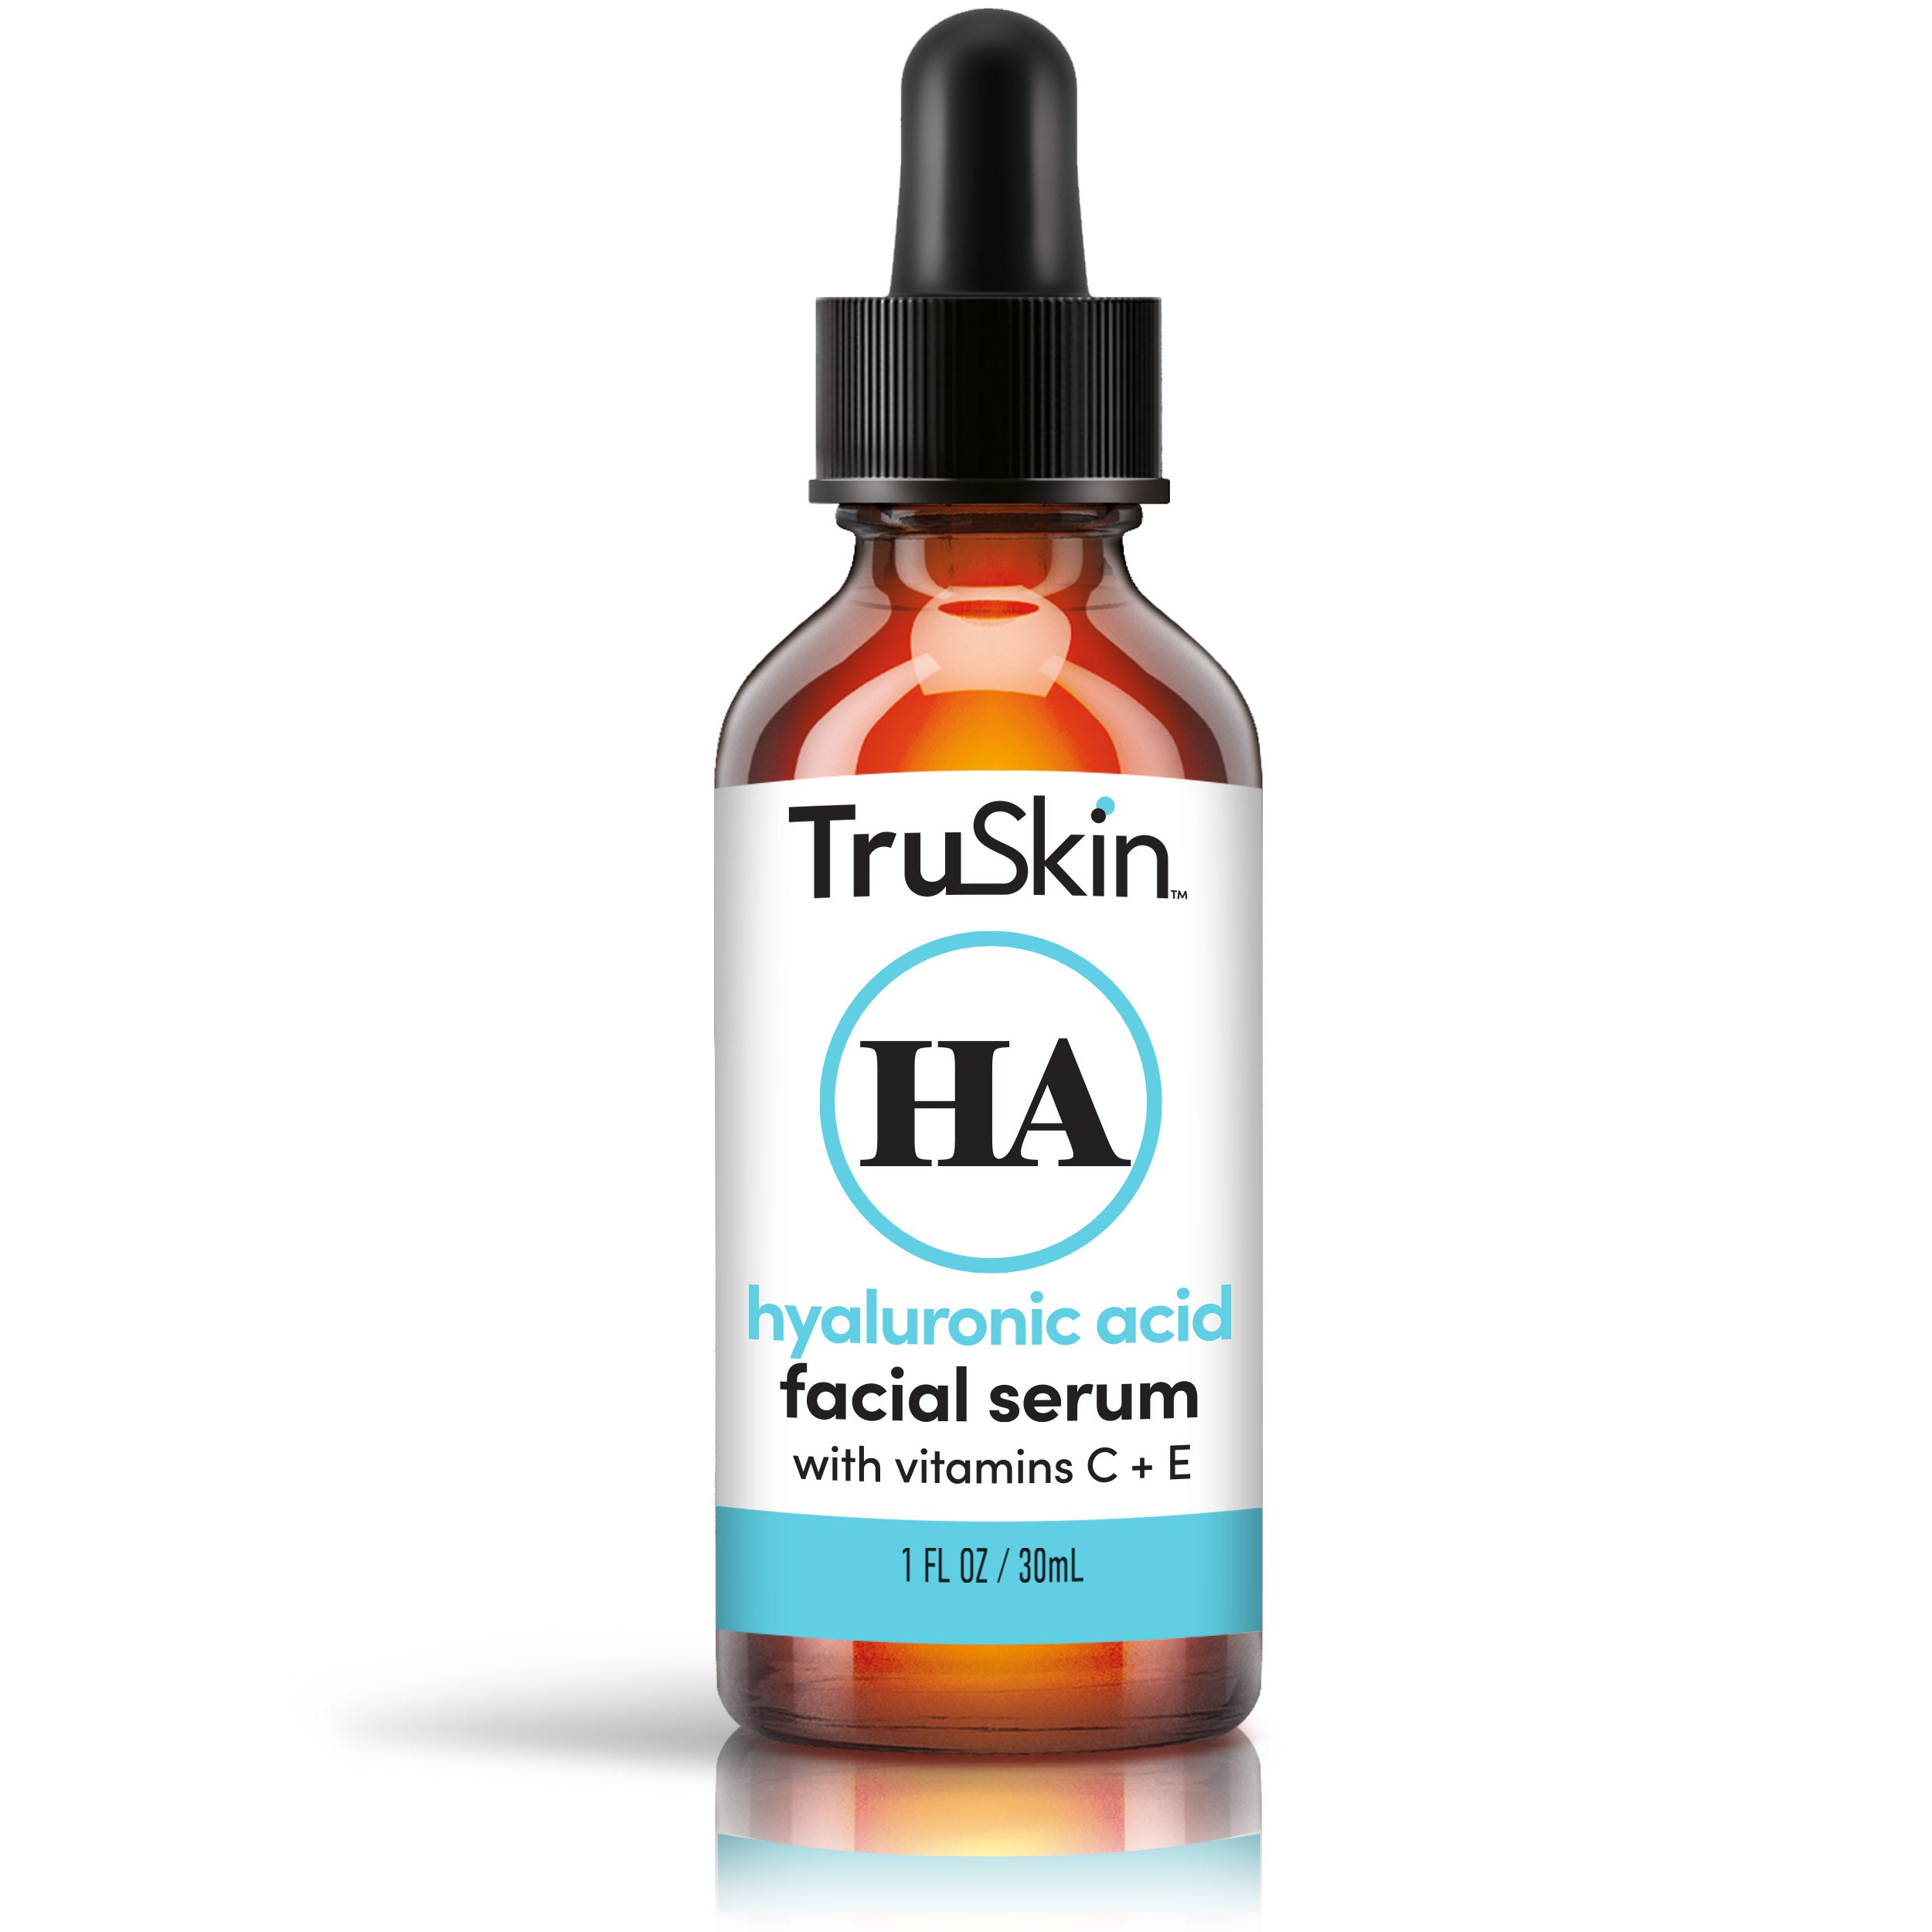 TruSkin Hyaluronic Acid Facial Serum